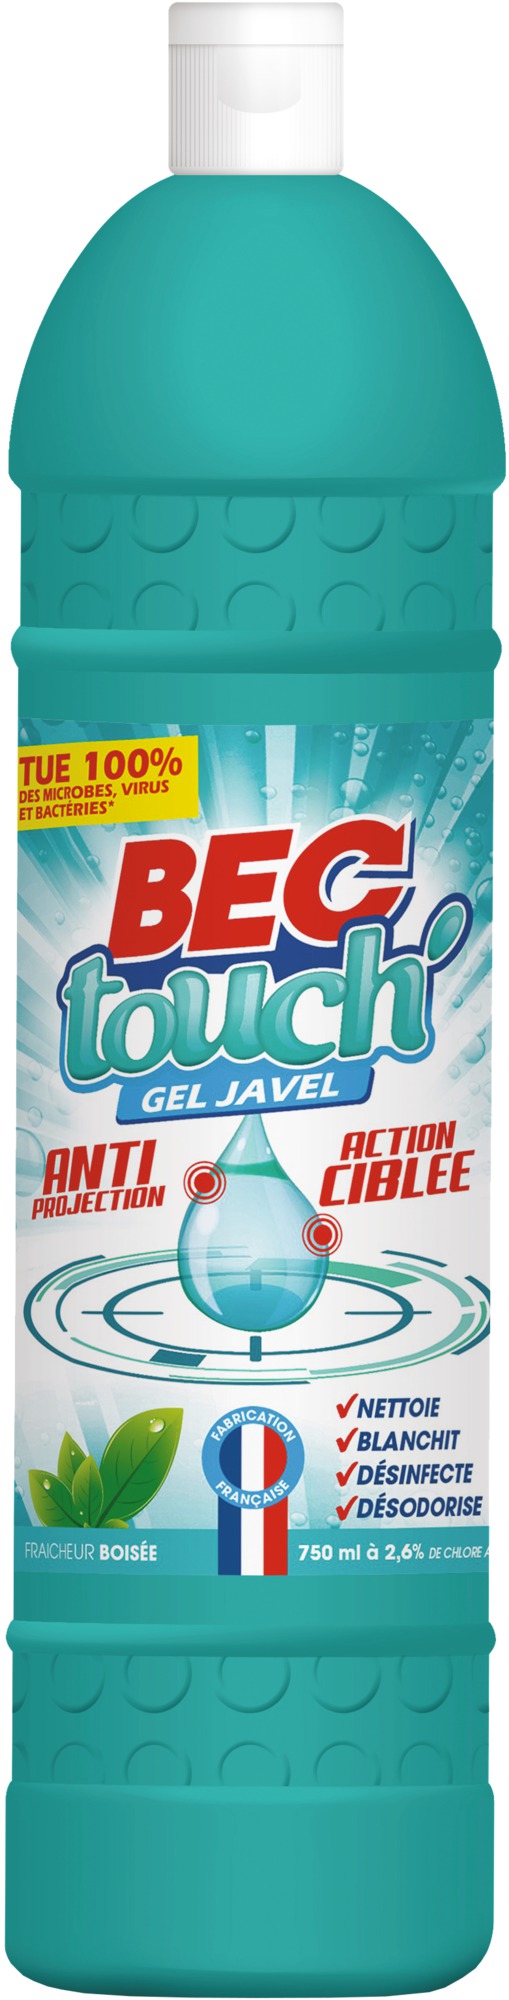 Désinfectant gel javel Touch Bec - 750 ml - Fraicheur boisé